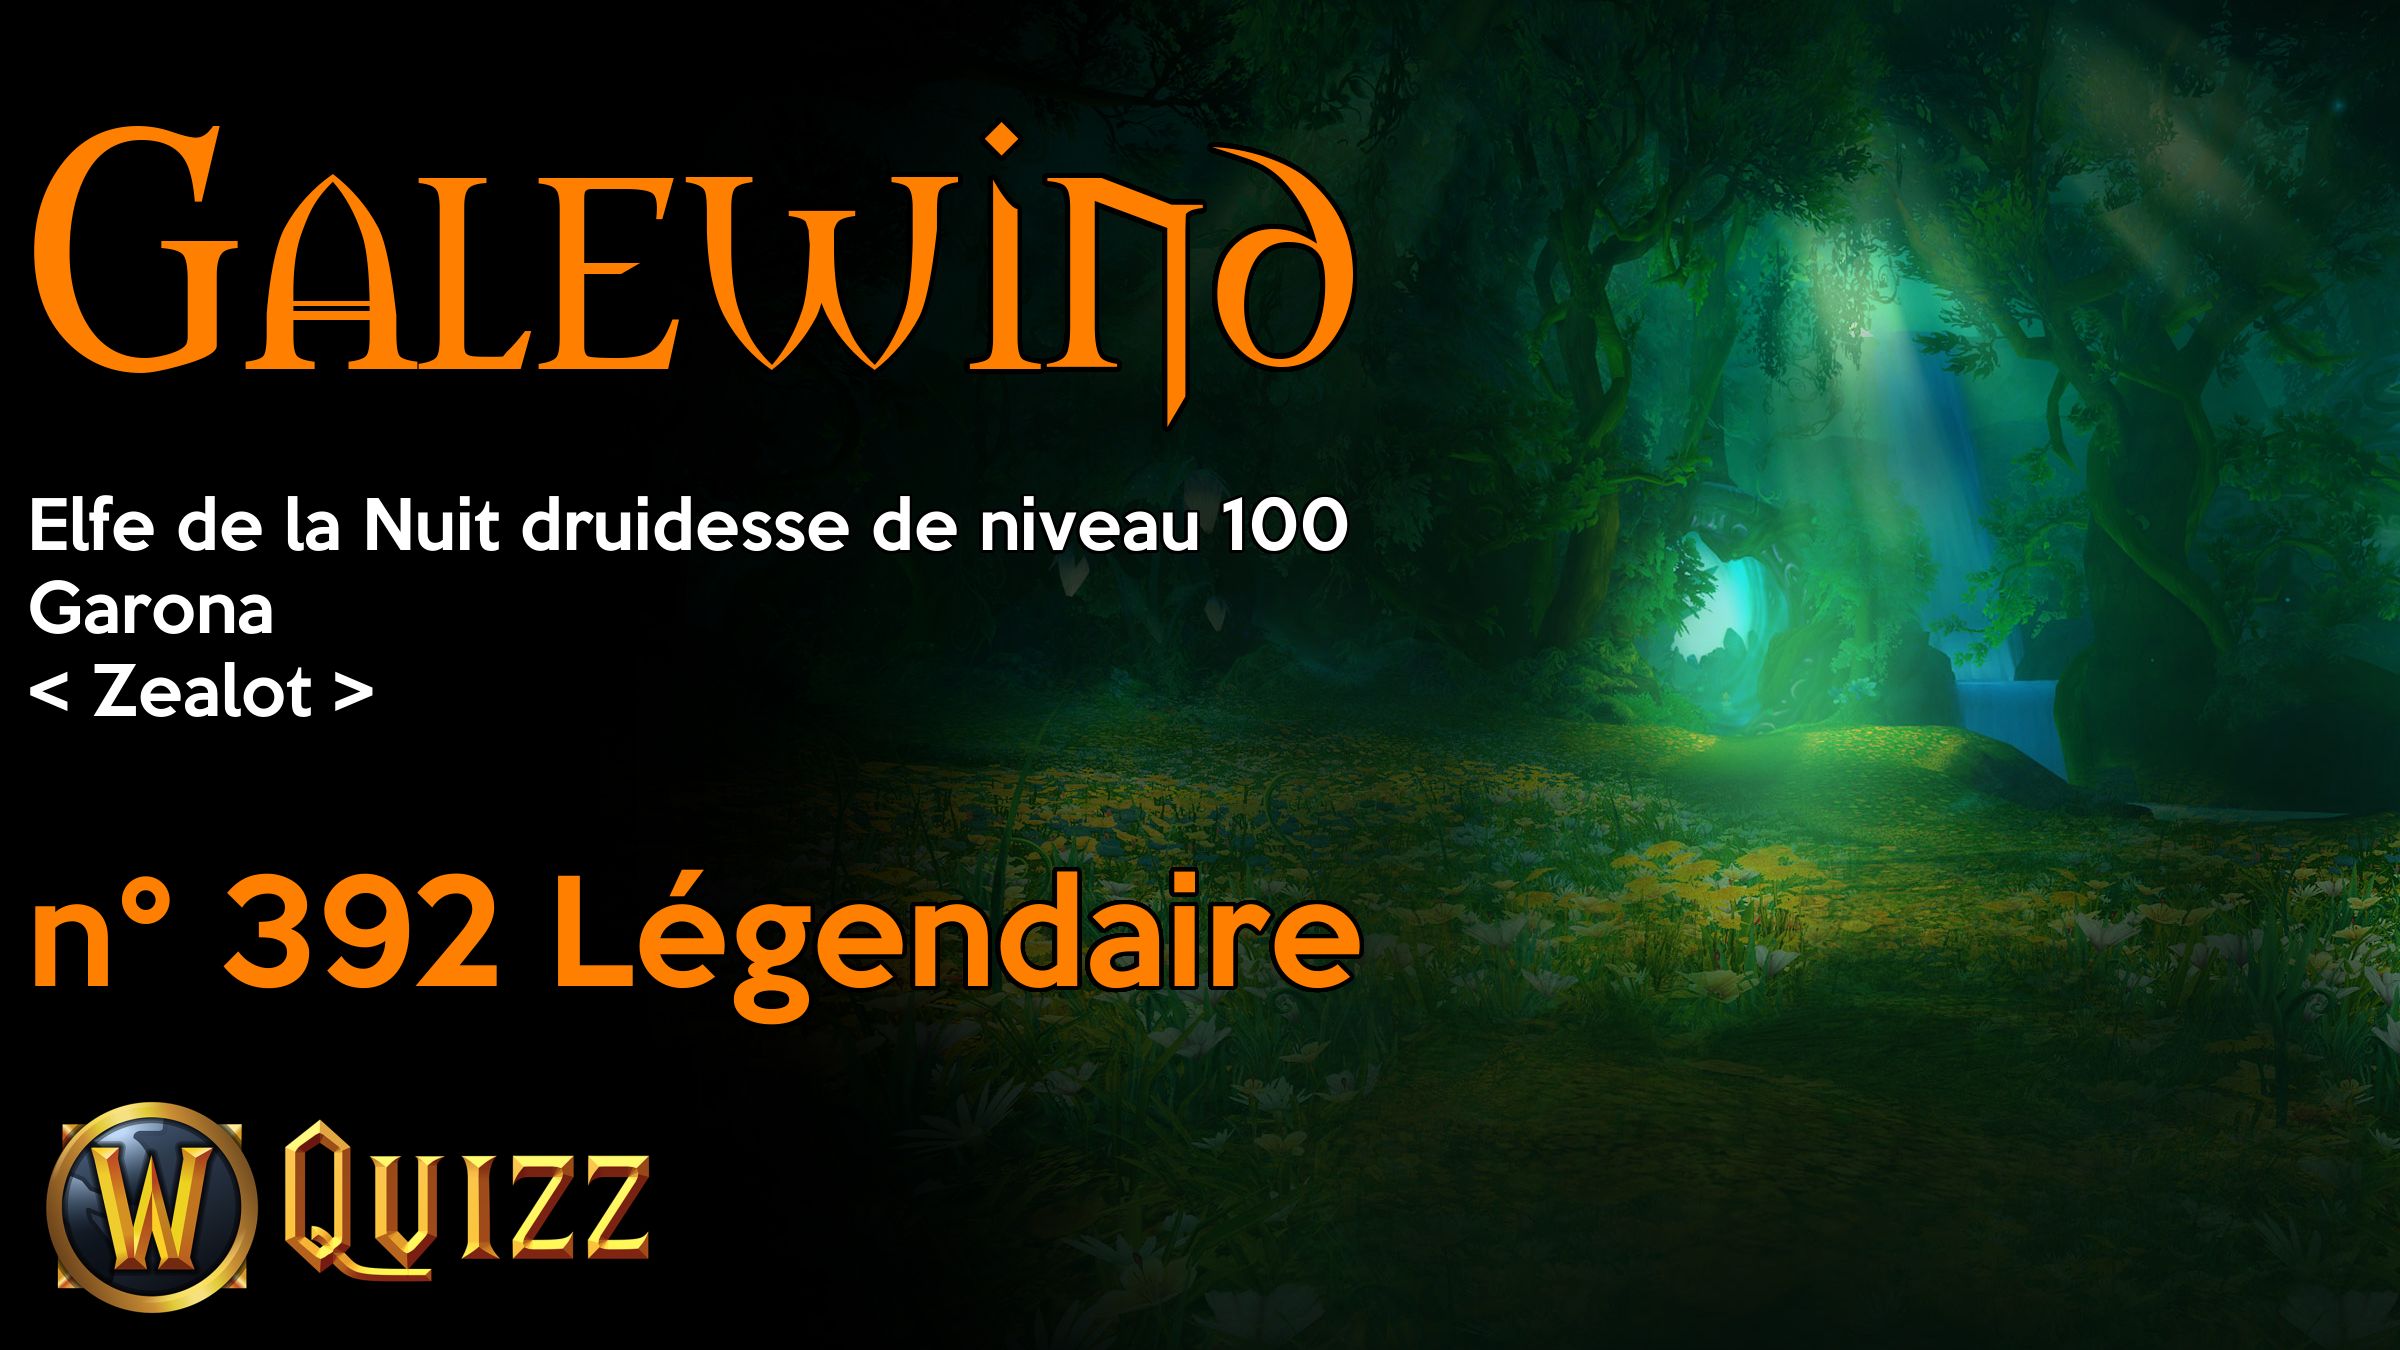 Galewind, Elfe de la Nuit druidesse de niveau 100, Garona